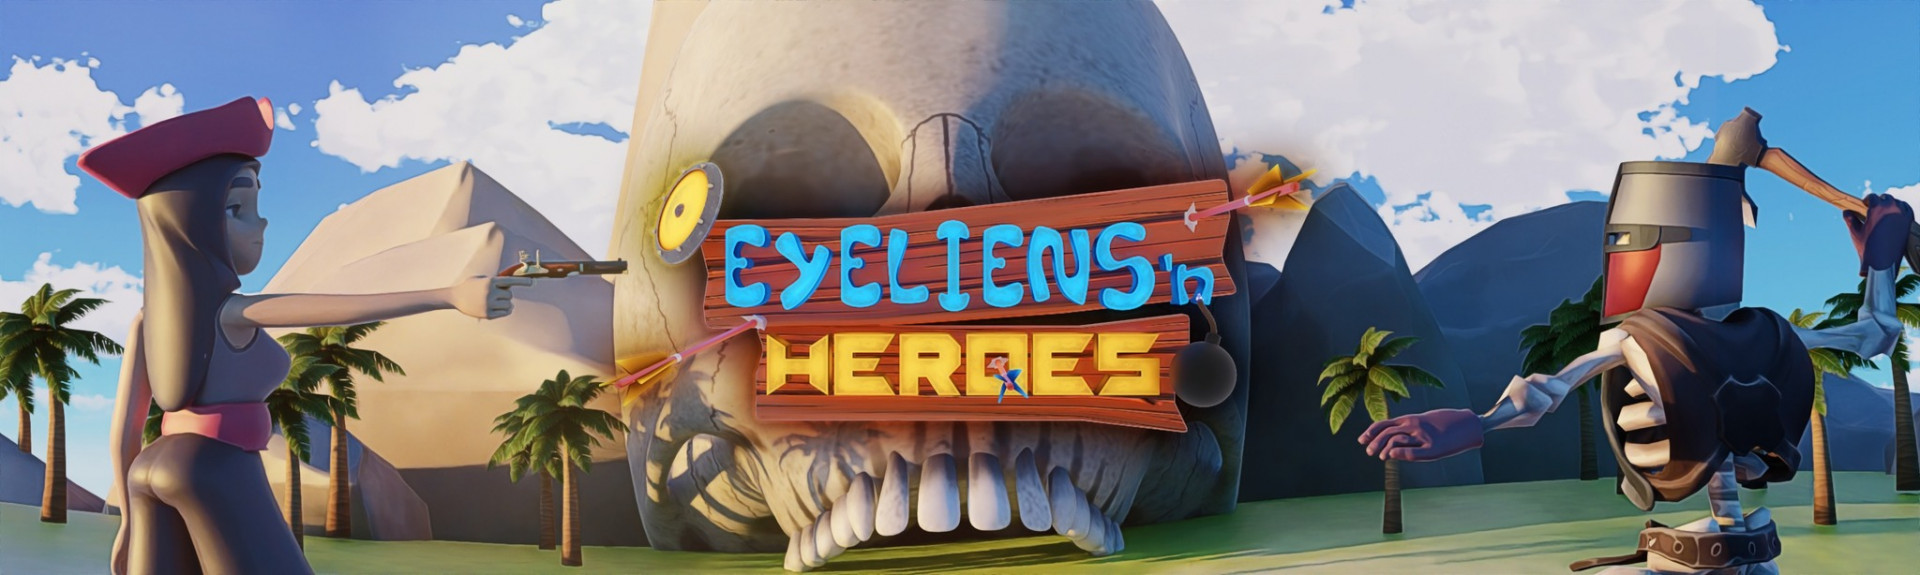 Eyeliens & Heroes